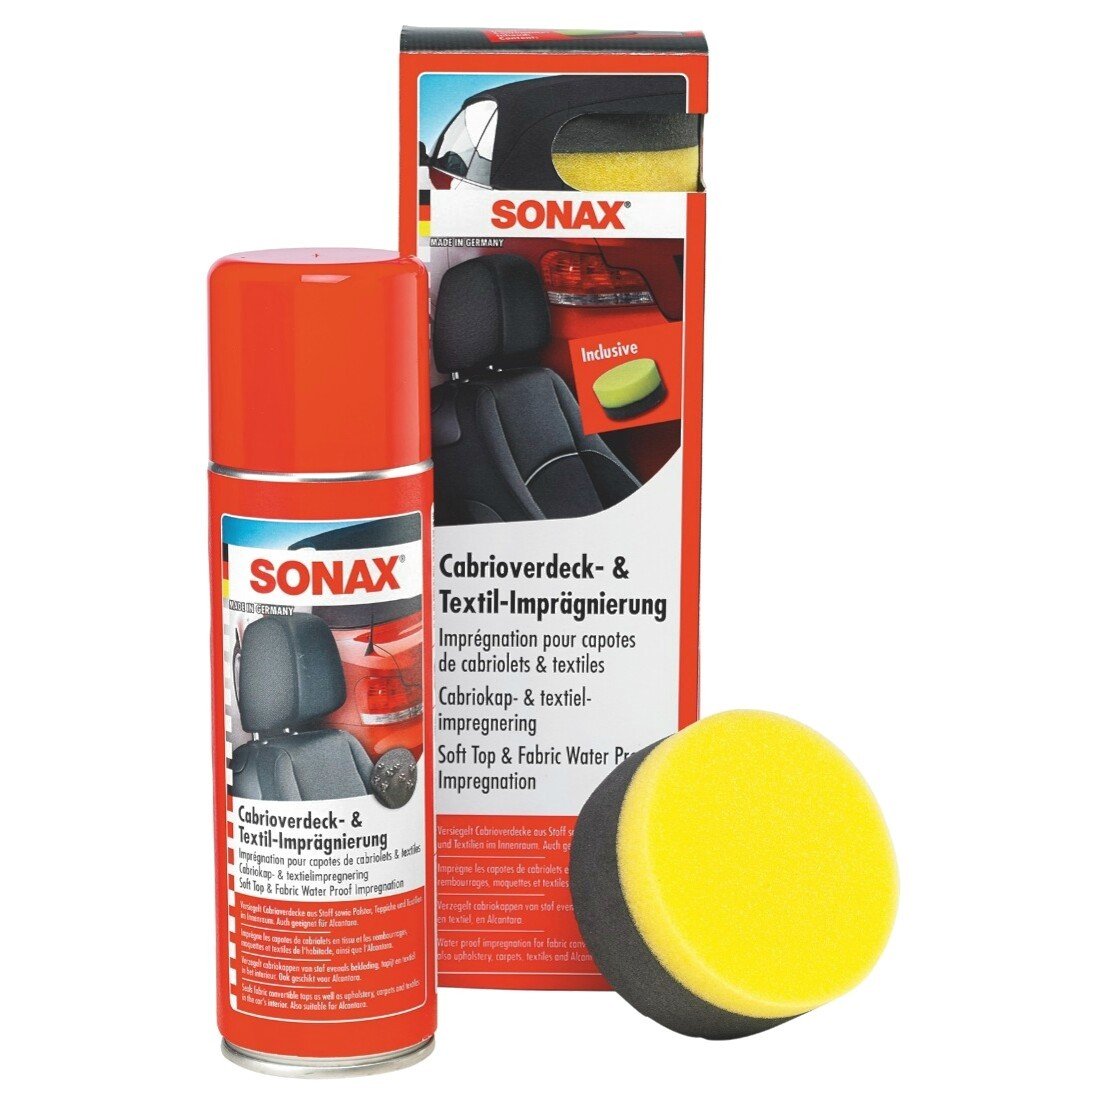 SONAX Cabrioverdeck- & TextilImprägnierung (300 ml) Versiegelung und Imprägnierung für Cabrioverdecke aus Stoff | Art-Nr. 03102000